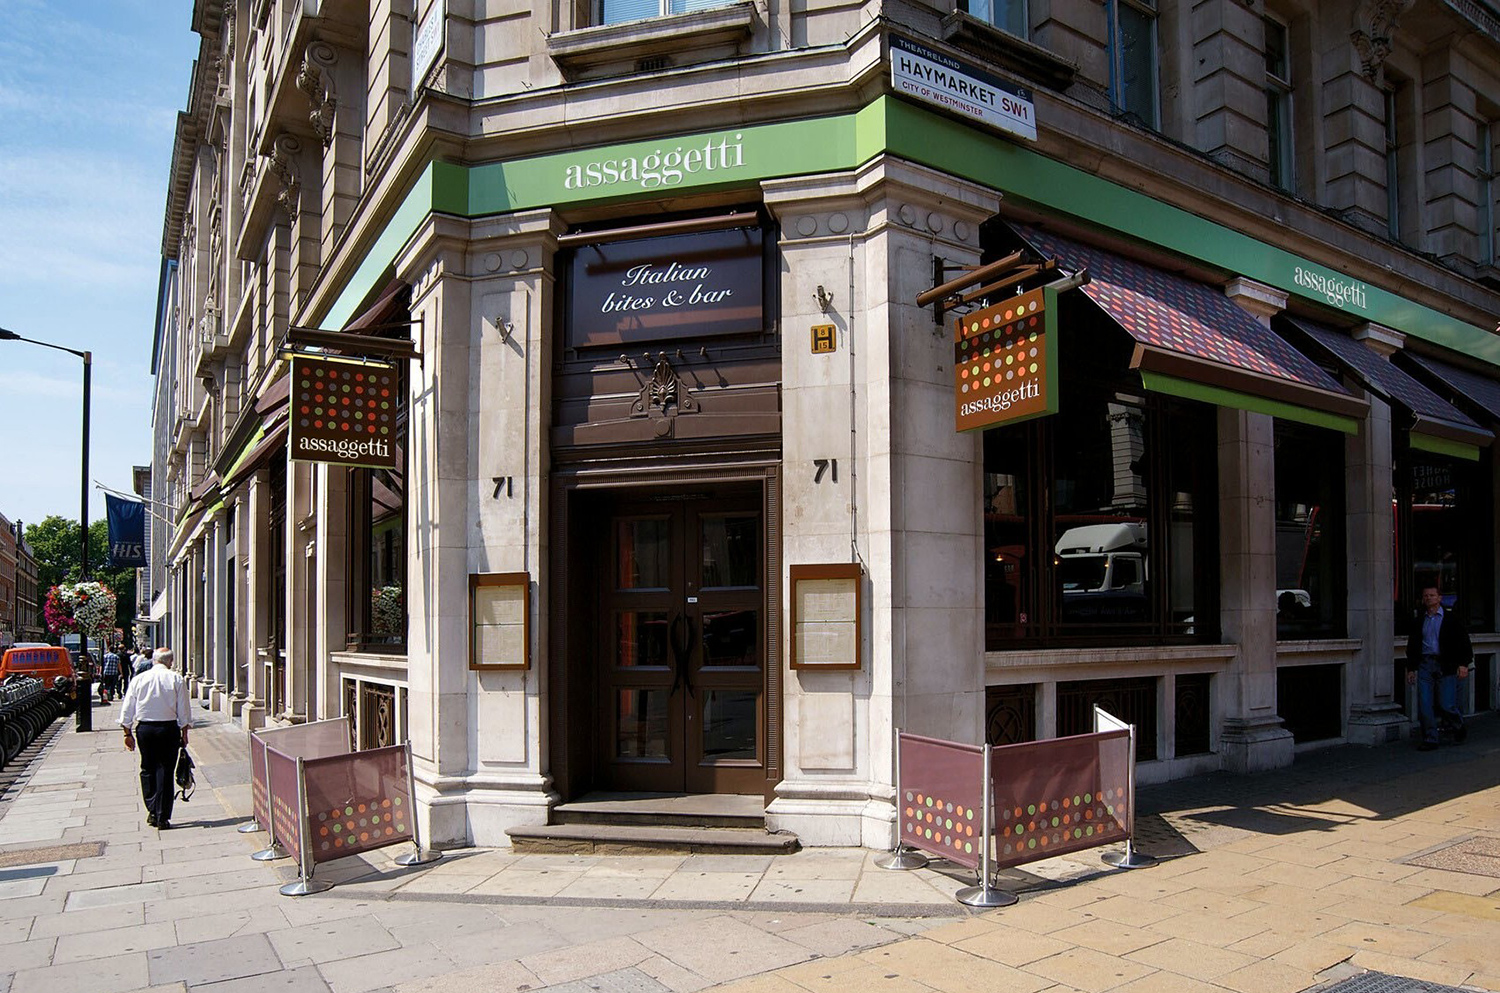 Assaggetti Restaurant & Bar